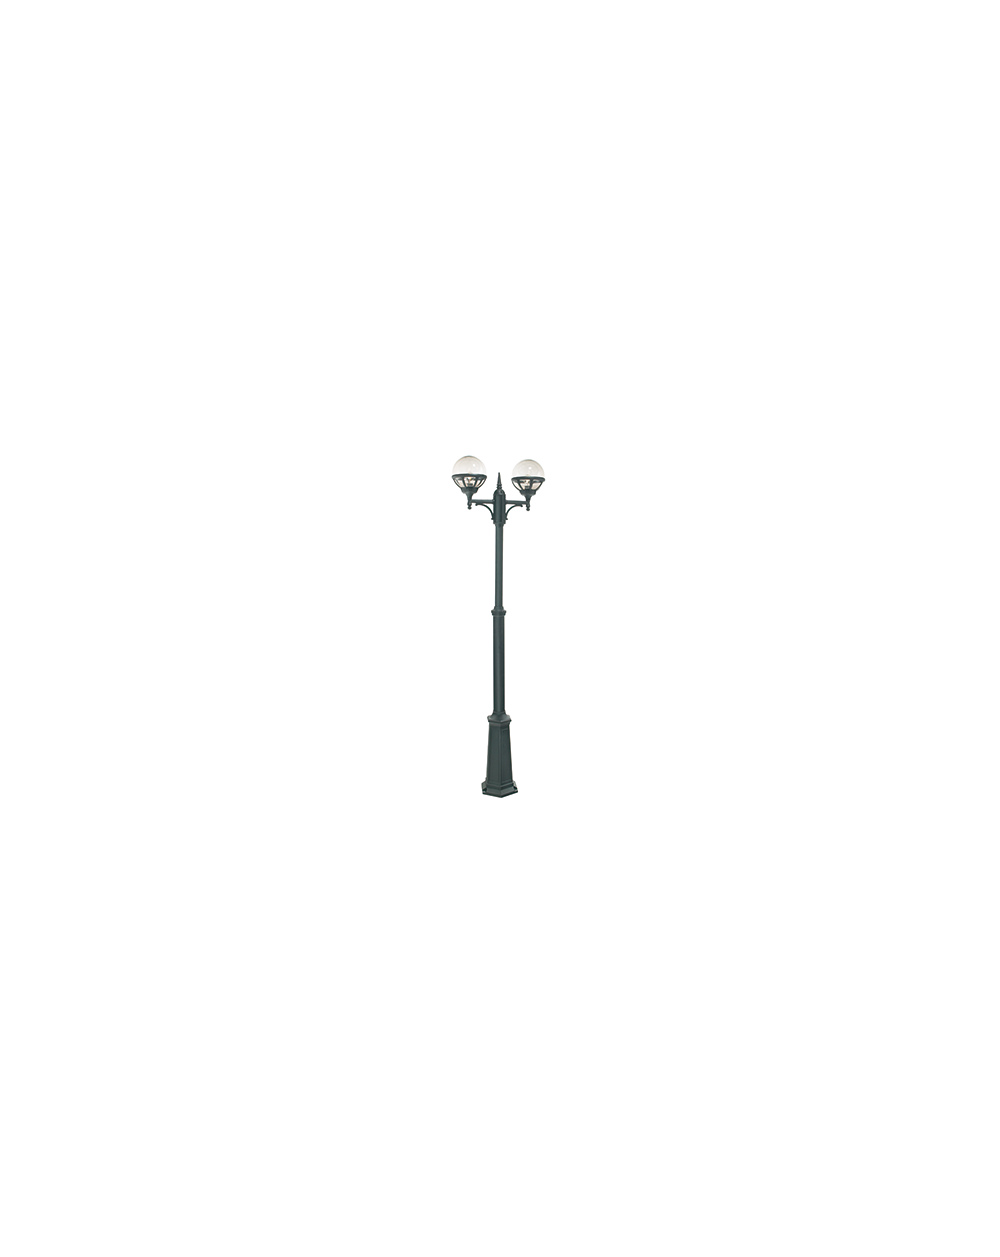 Latarnia podwójna Bolonia klosz mleczny - Norlys zewnętrzna lampa ogrodowa oprawa uliczna parkowa czarna lub biała